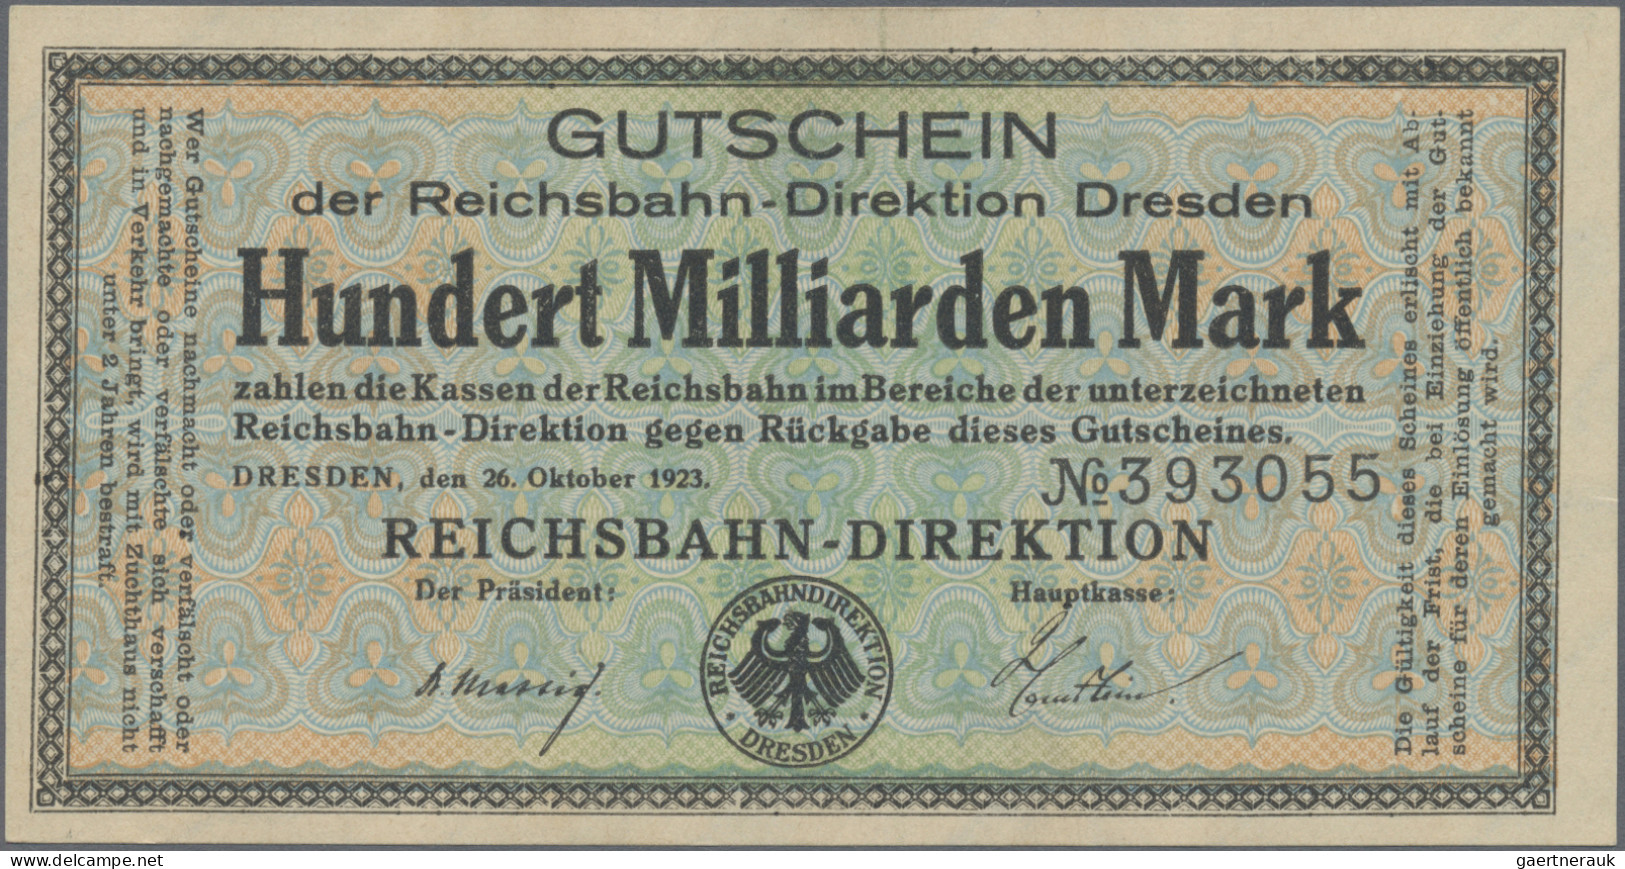 Deutschland - Reichsbahn / Reichspost: Riesiges Lot Reichsbahn mit 97 Scheinen m